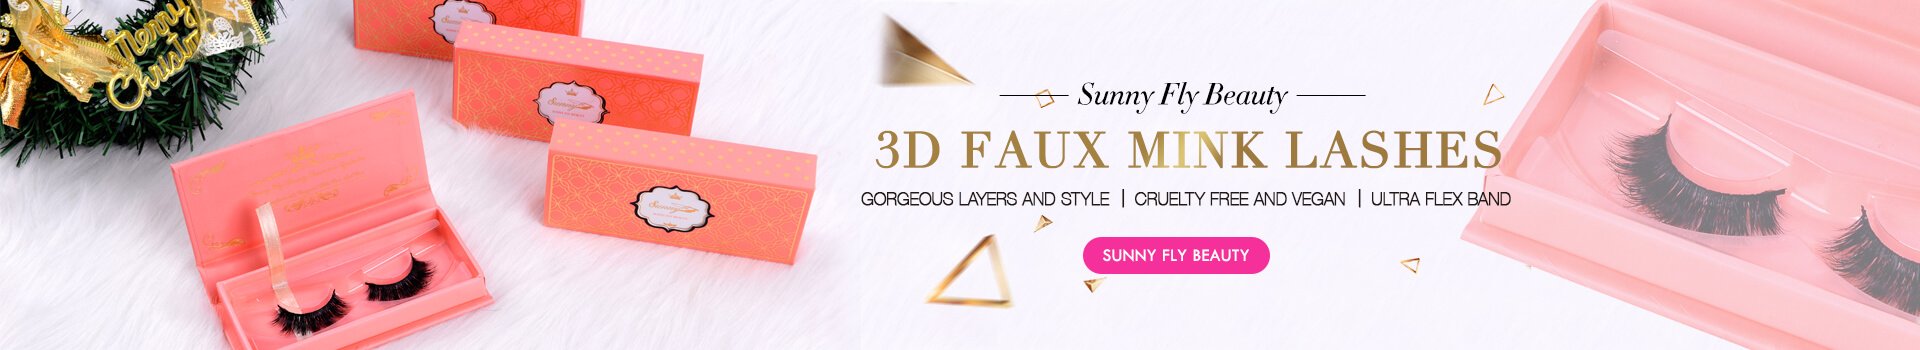 3D Faux Mink Lashes SD11